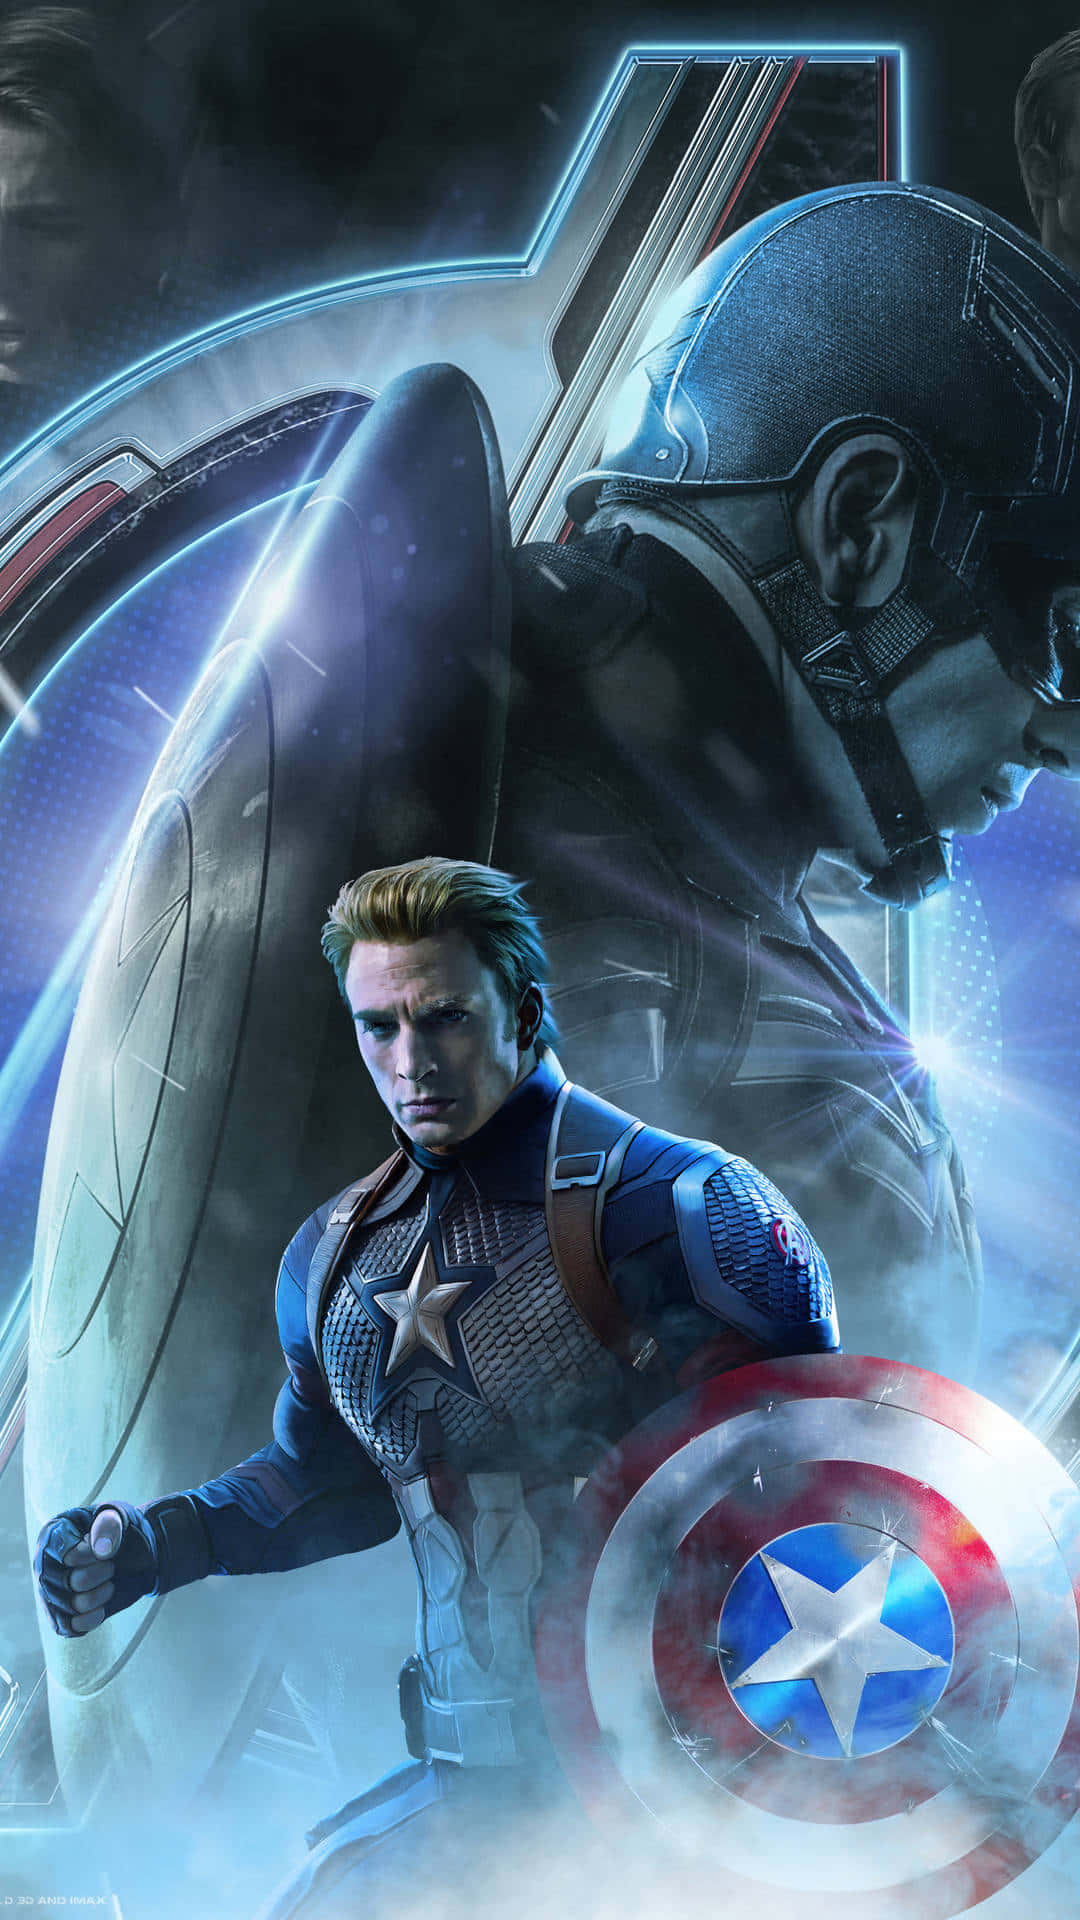 Hdbakgrundsbild Av Den Ikoniska Marvel-superhjälten Captain America.